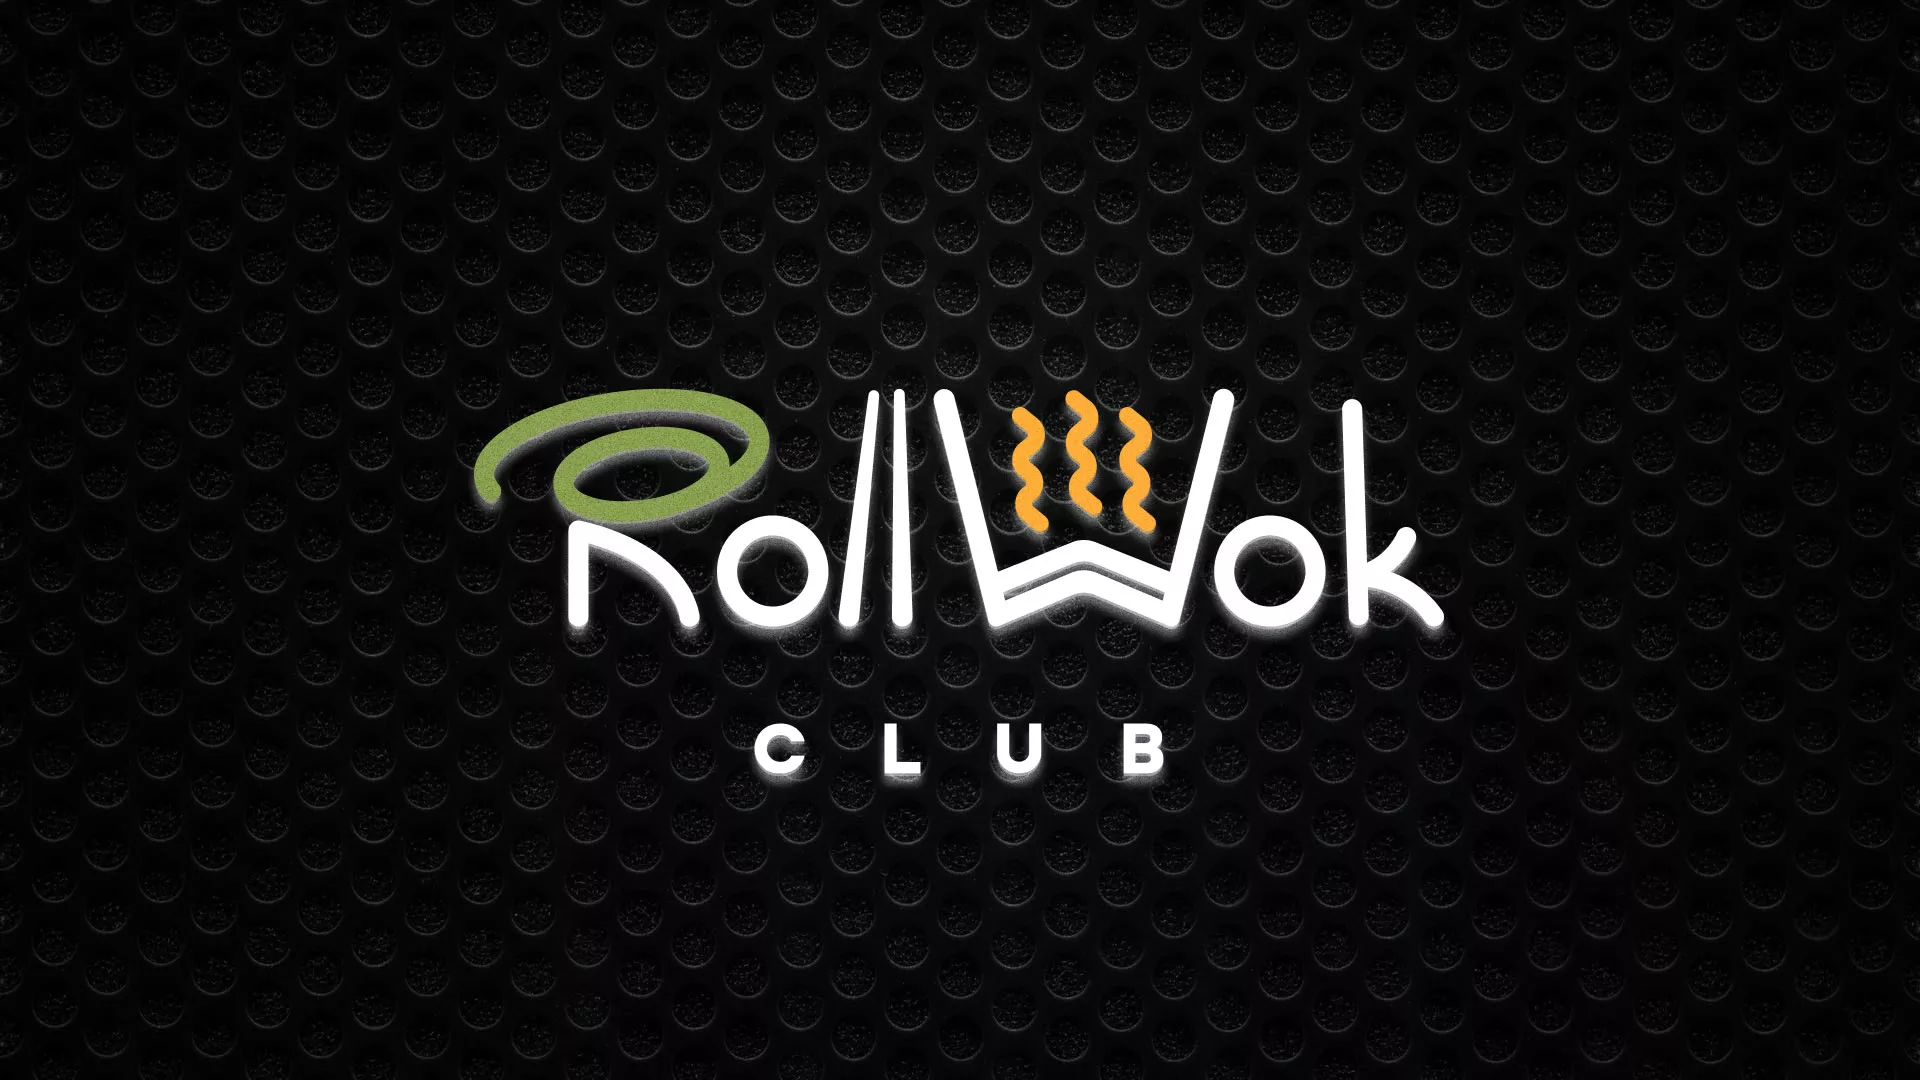 Брендирование торговых точек суши-бара «Roll Wok Club» в Богородске